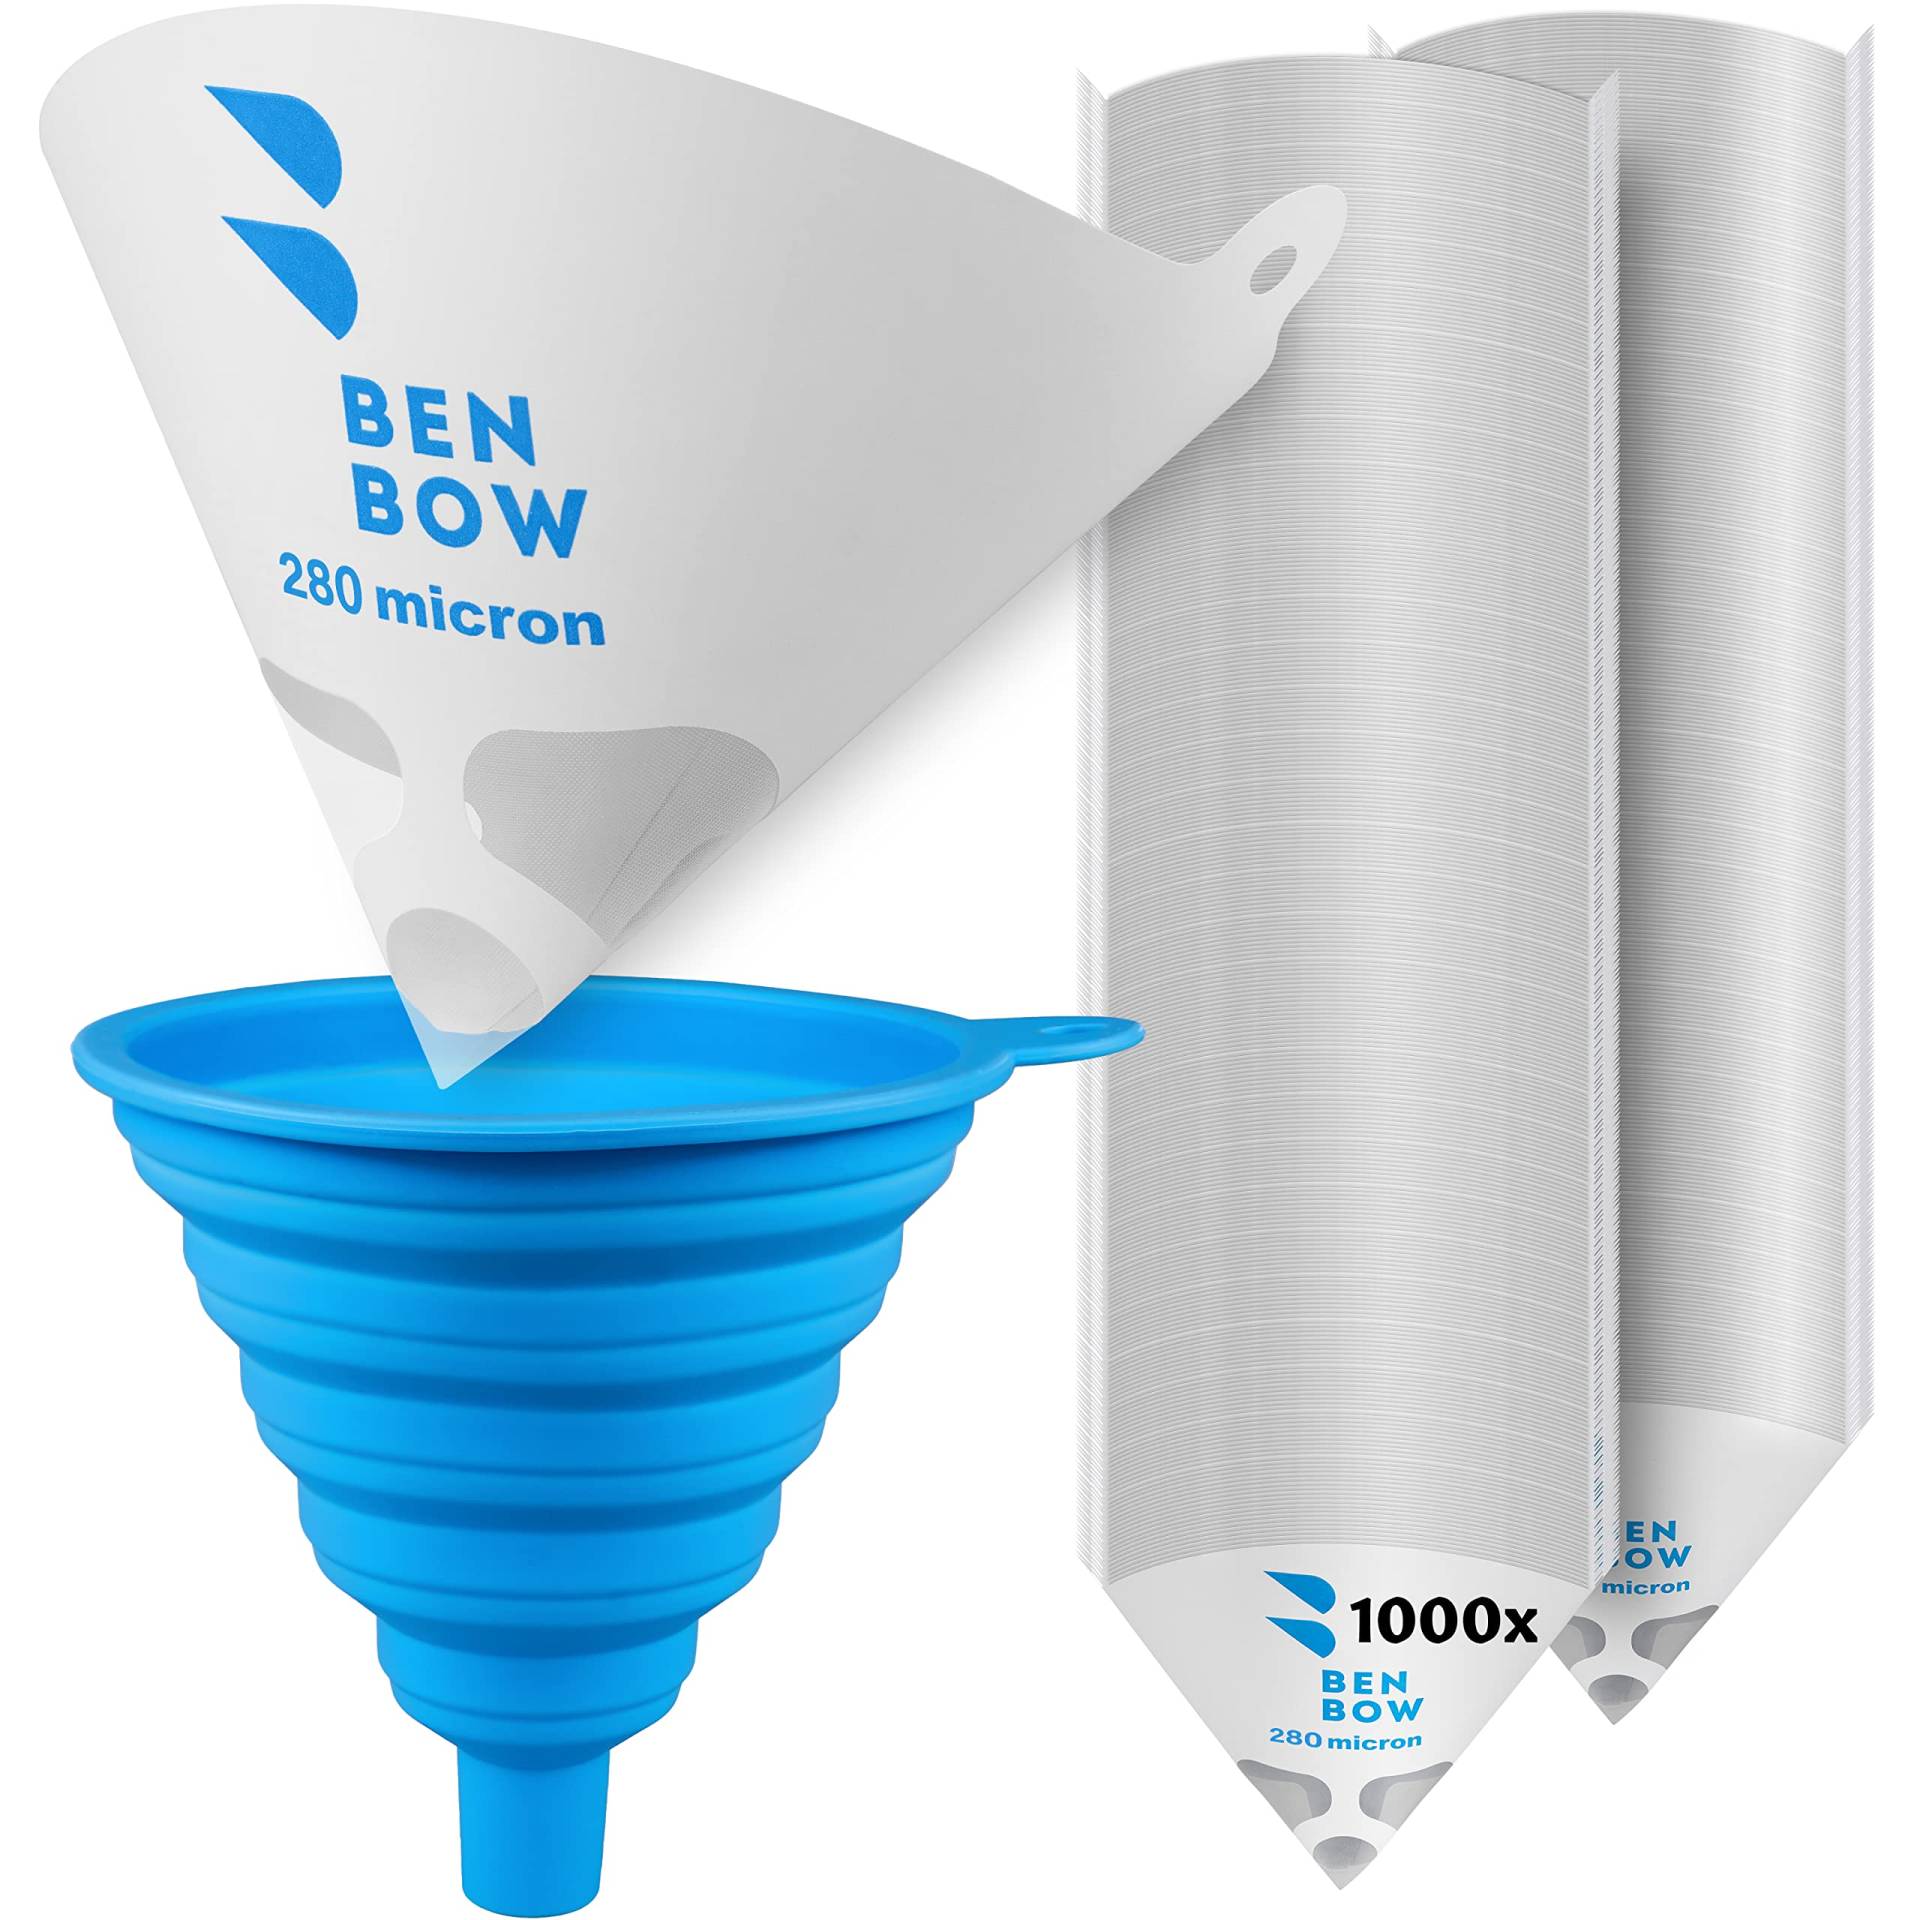 BenBow Lacksieb 280µ x 1000 Stück - Einweg-Papierfilter mit Nylongewebe und praktischer Silikontrichter - zum Filtern von Lacken und Farben vor Verunreinigungen von BenBow